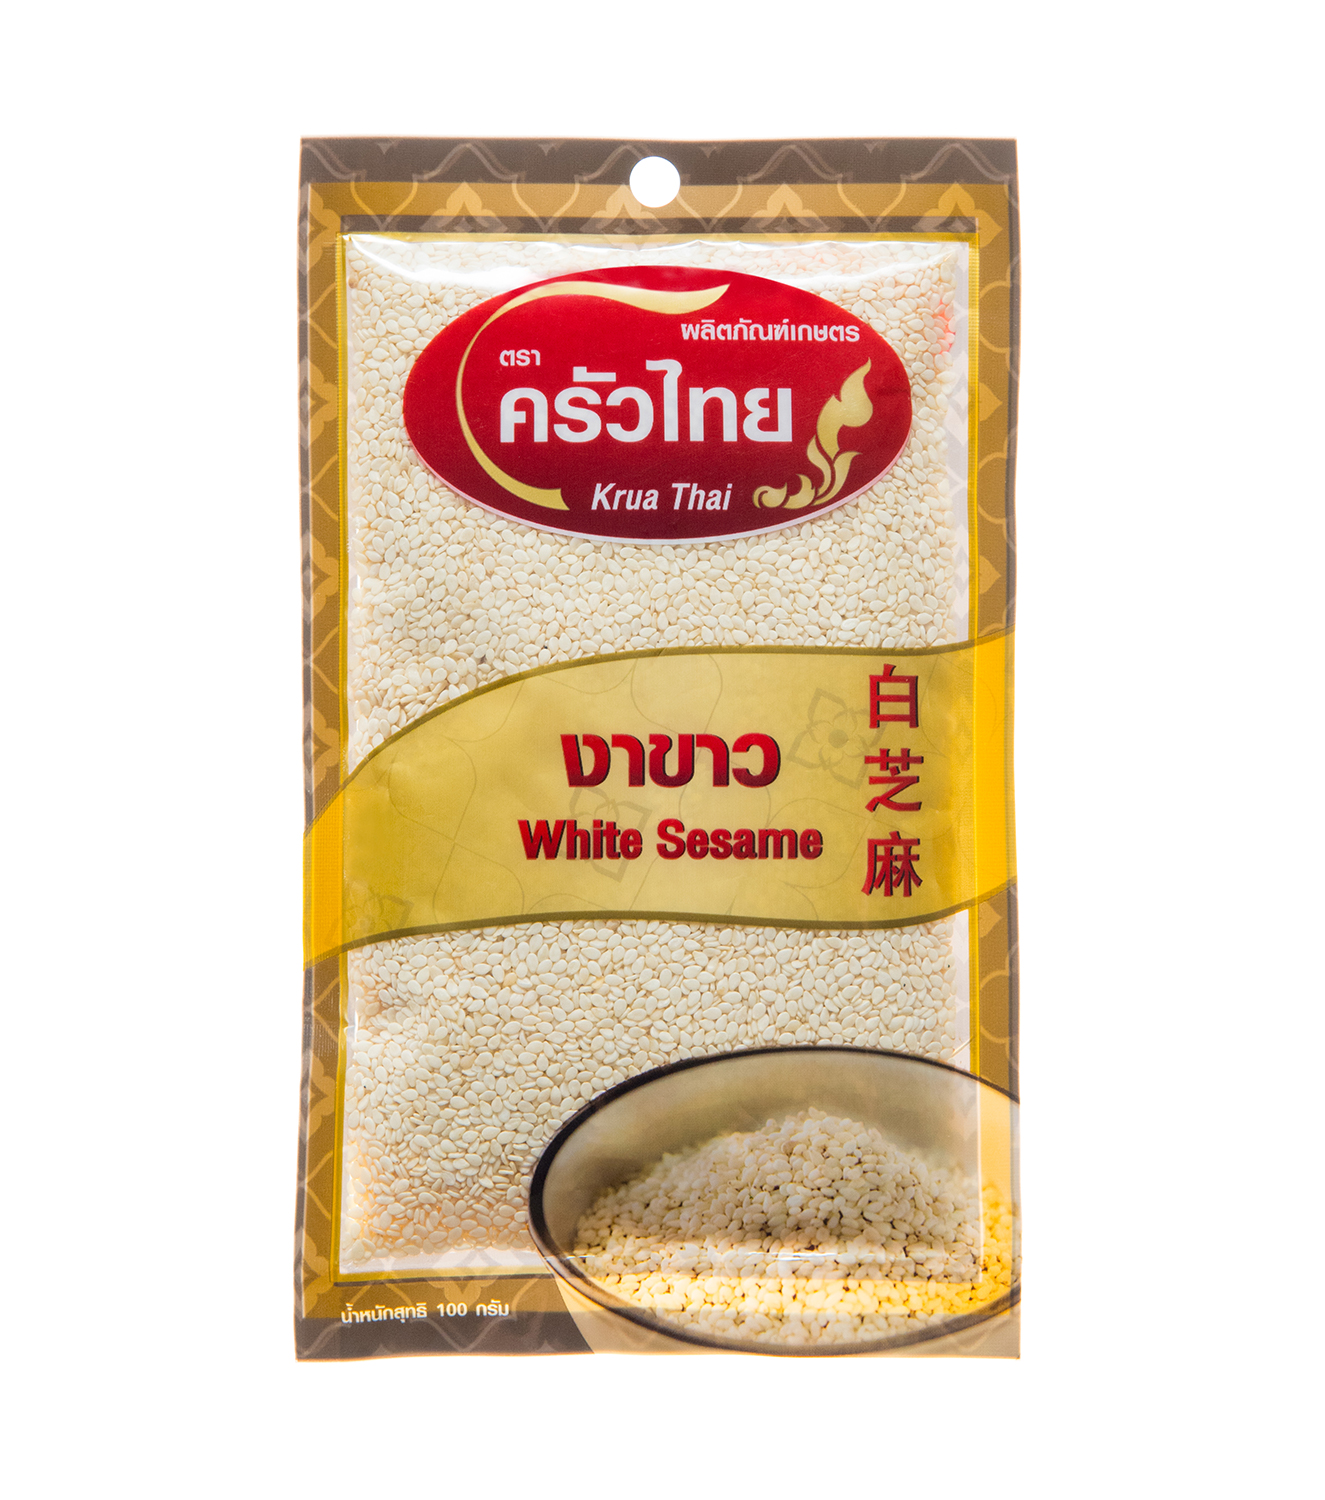 งาขาว ครัวไทย 100 กรัม / White Sesame Krua Thai 100 g.